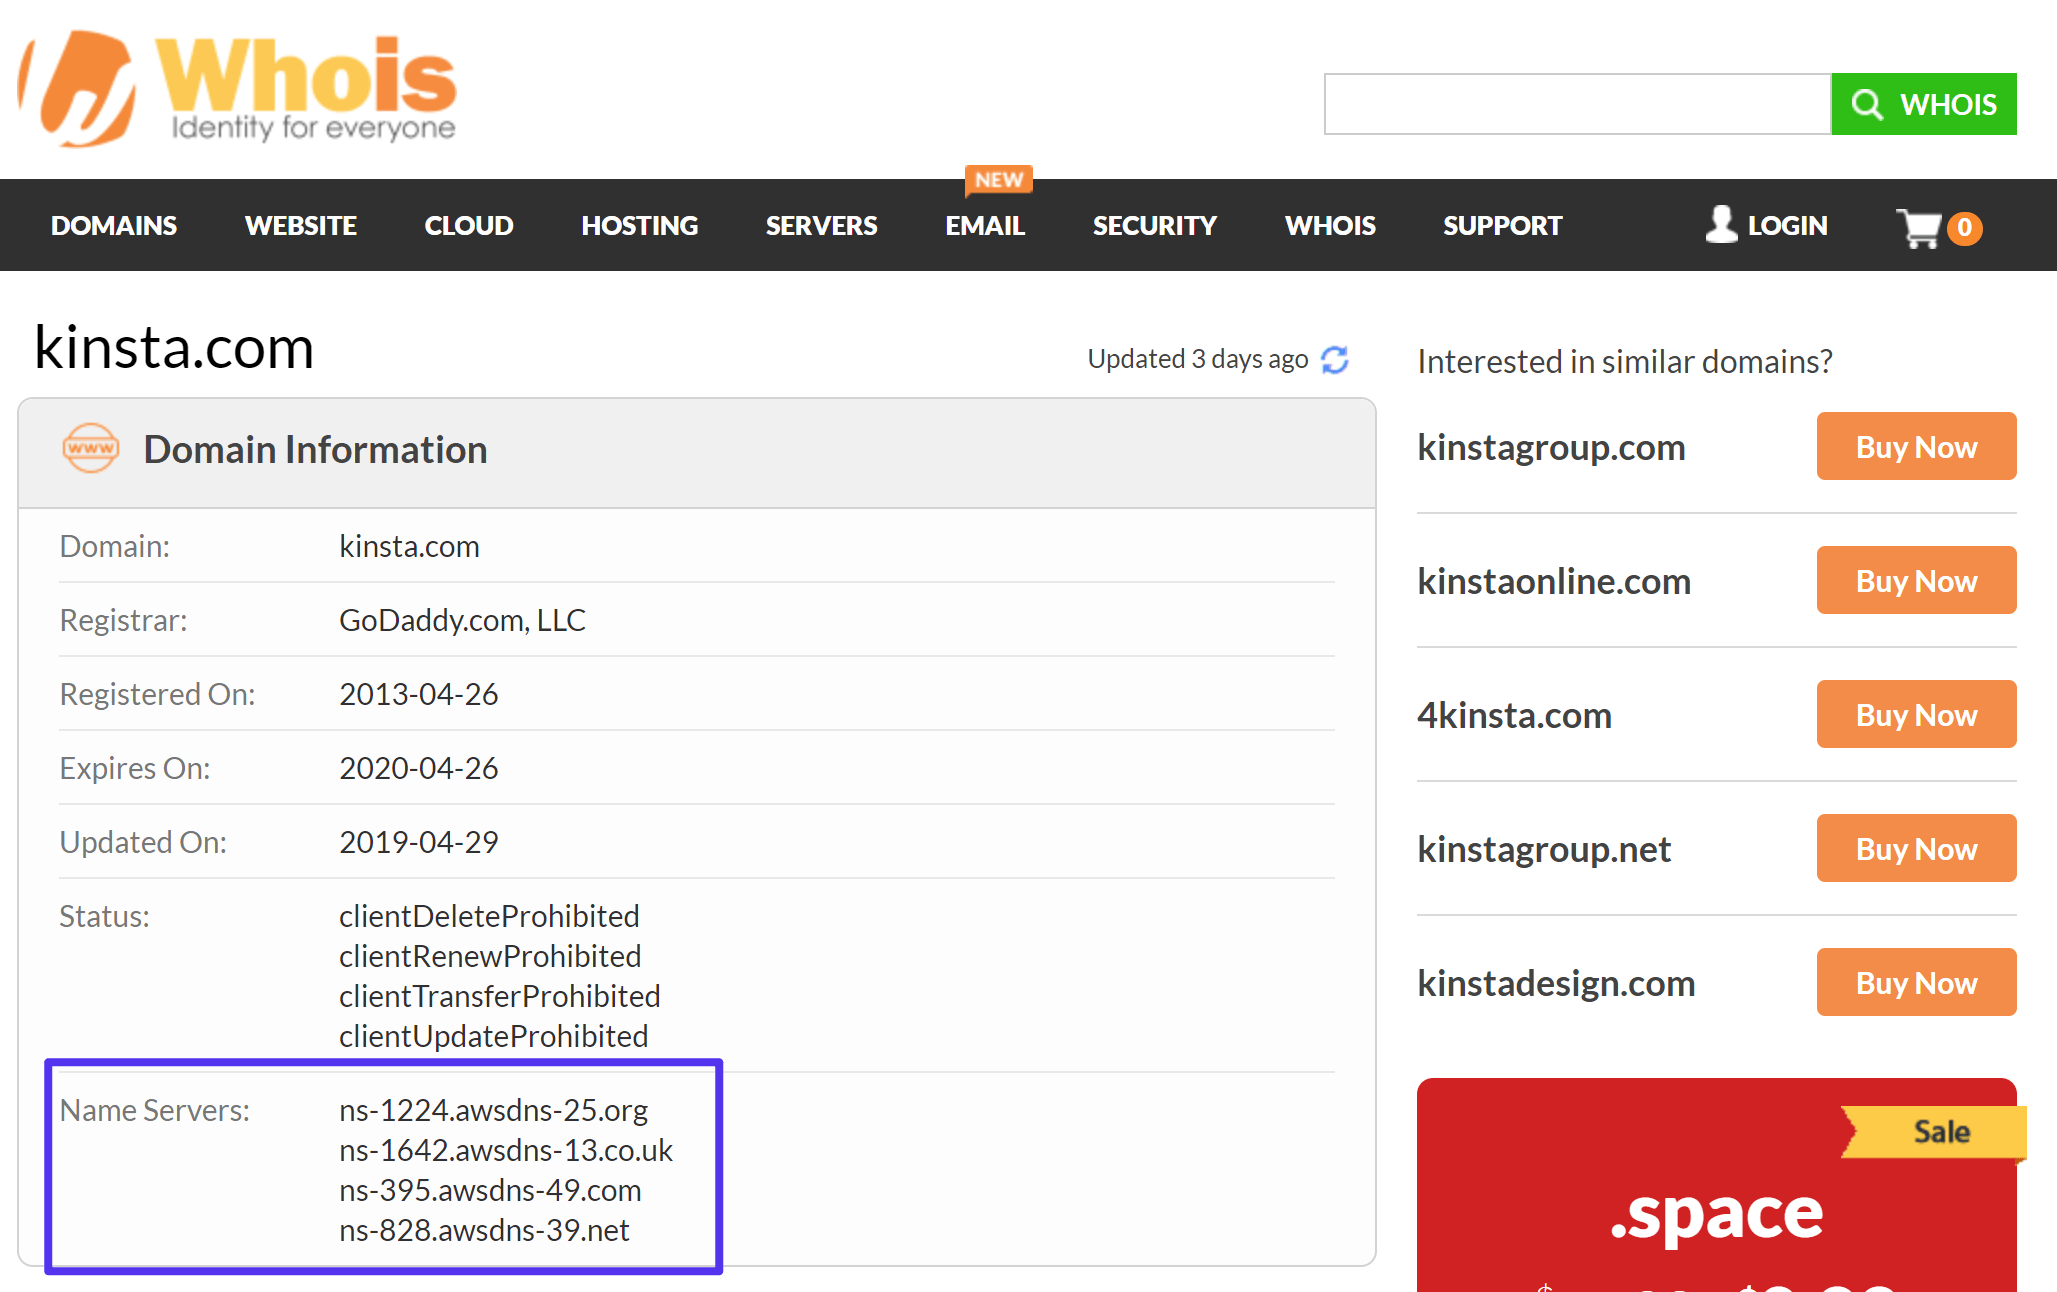 Como verificar que servidores de nomes você está usando com Whois